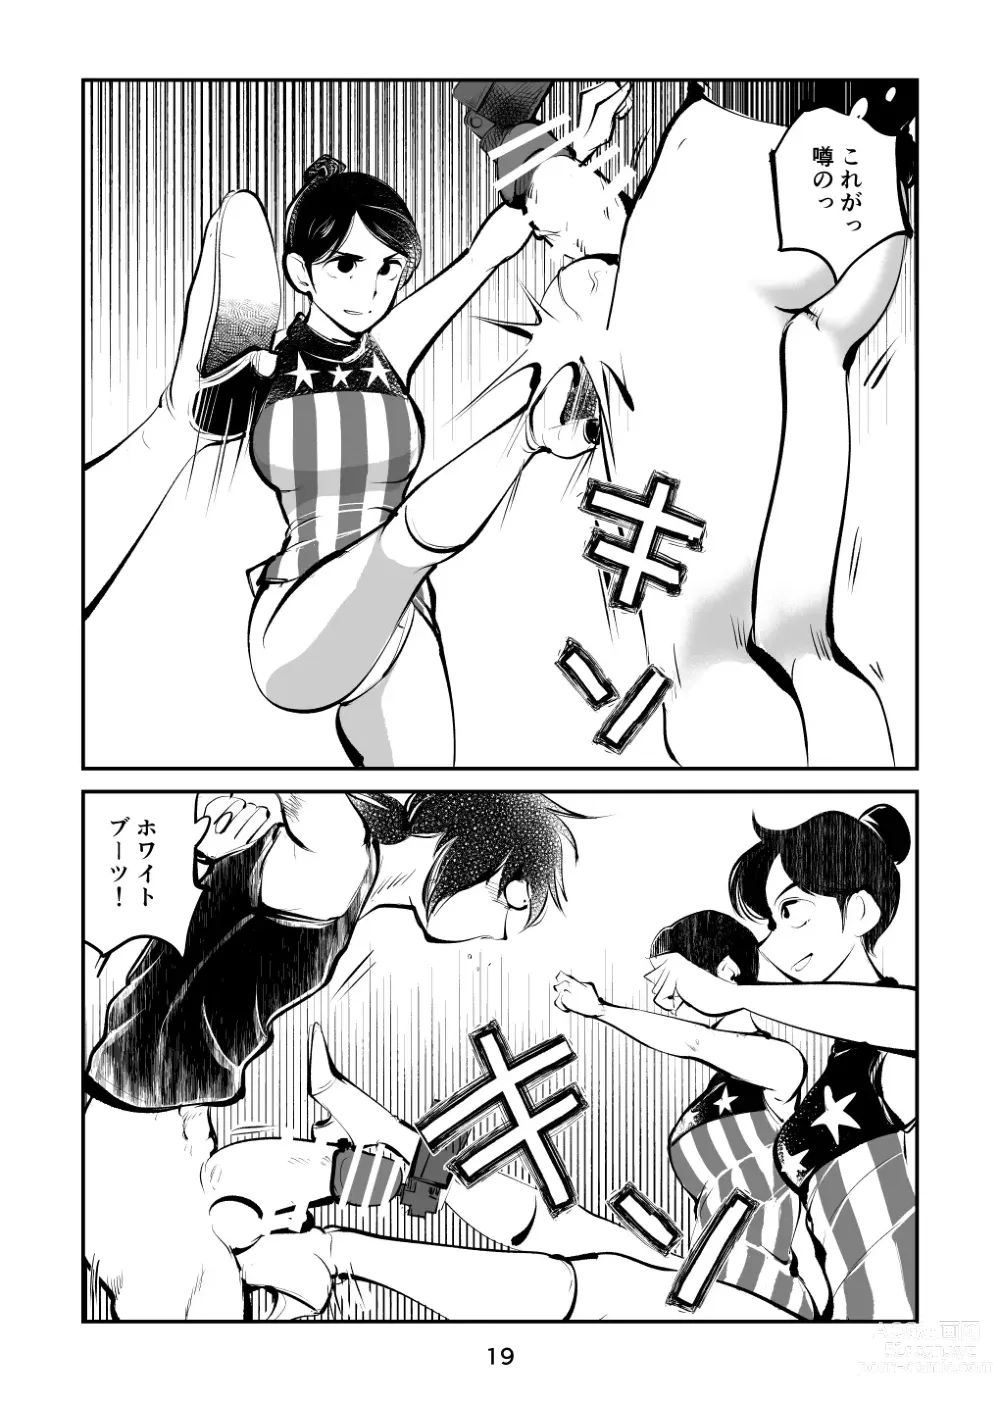 Page 19 of doujinshi Kinkeri Cheer Girl VS Tosatsuma Shakai Hito Cheer Girl-hen